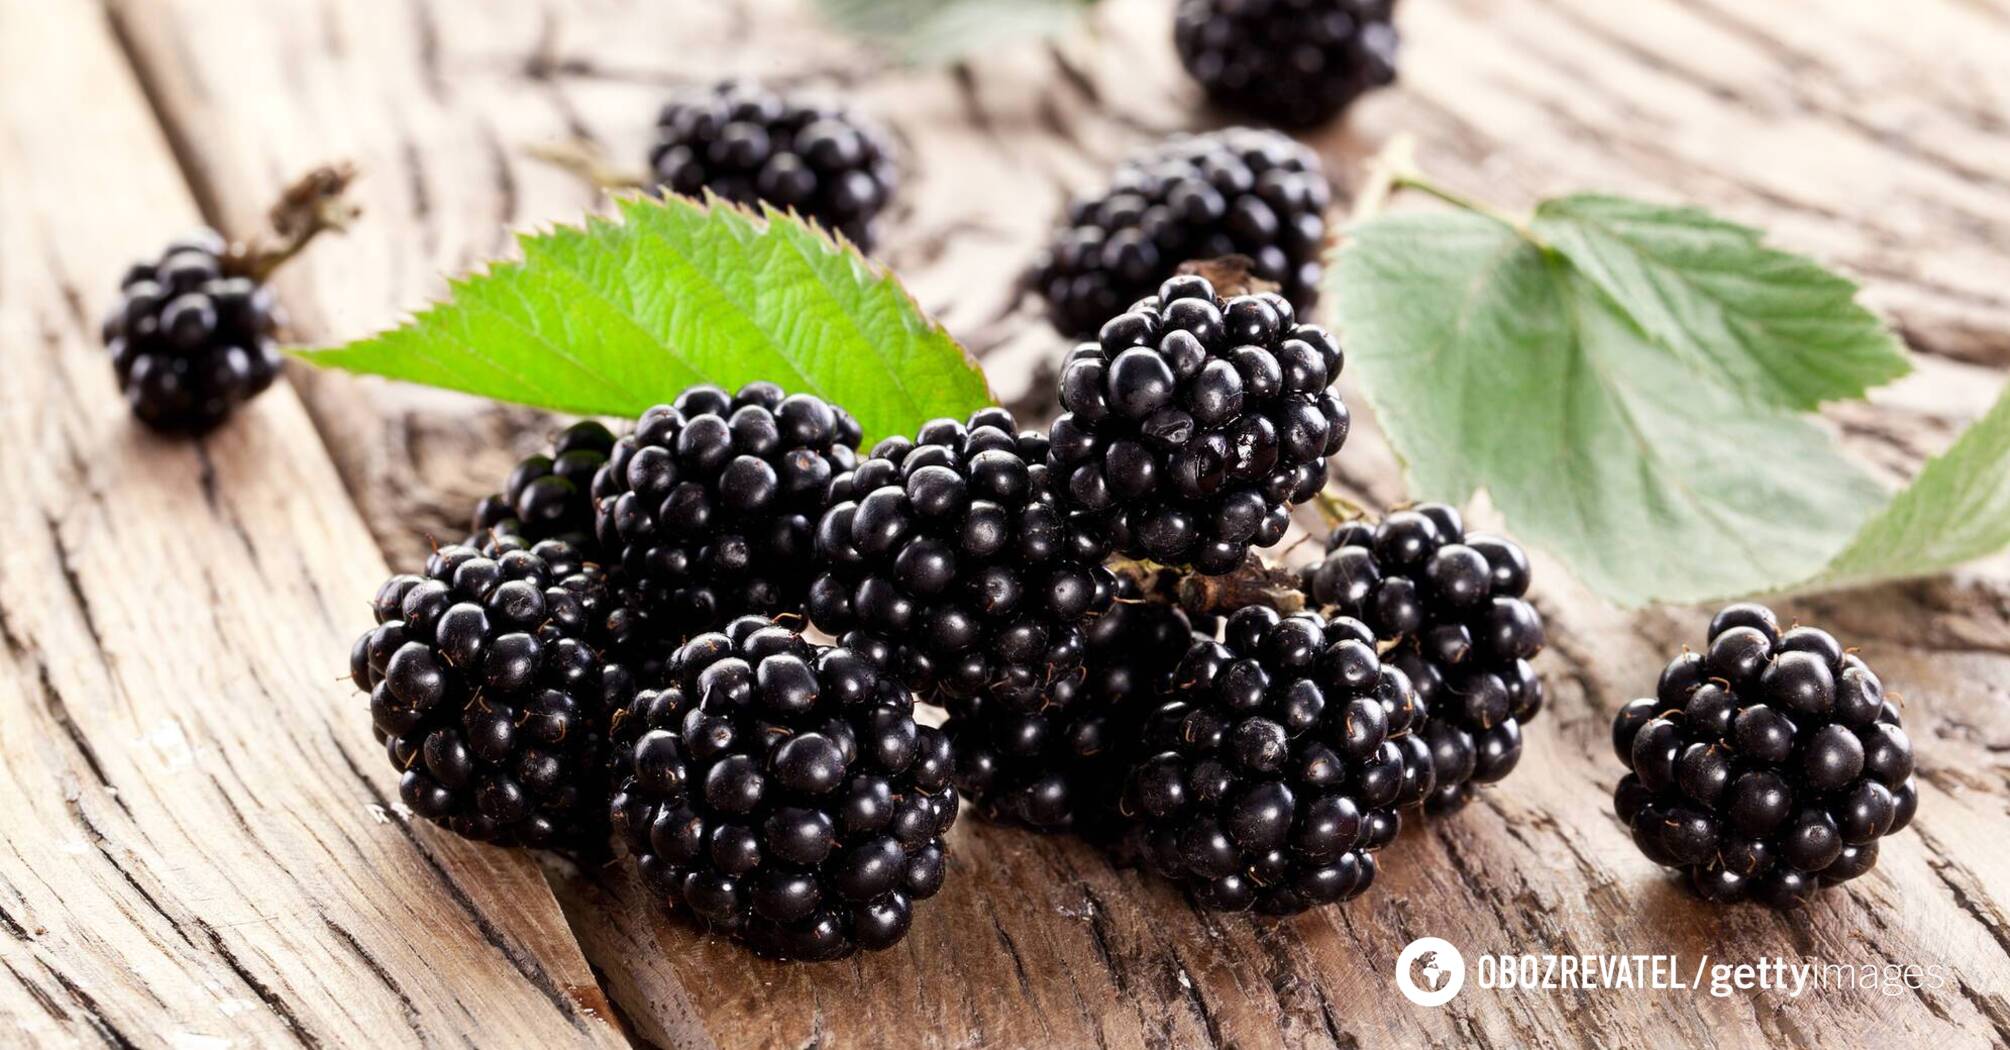 Blackberries help prevent vascular damage